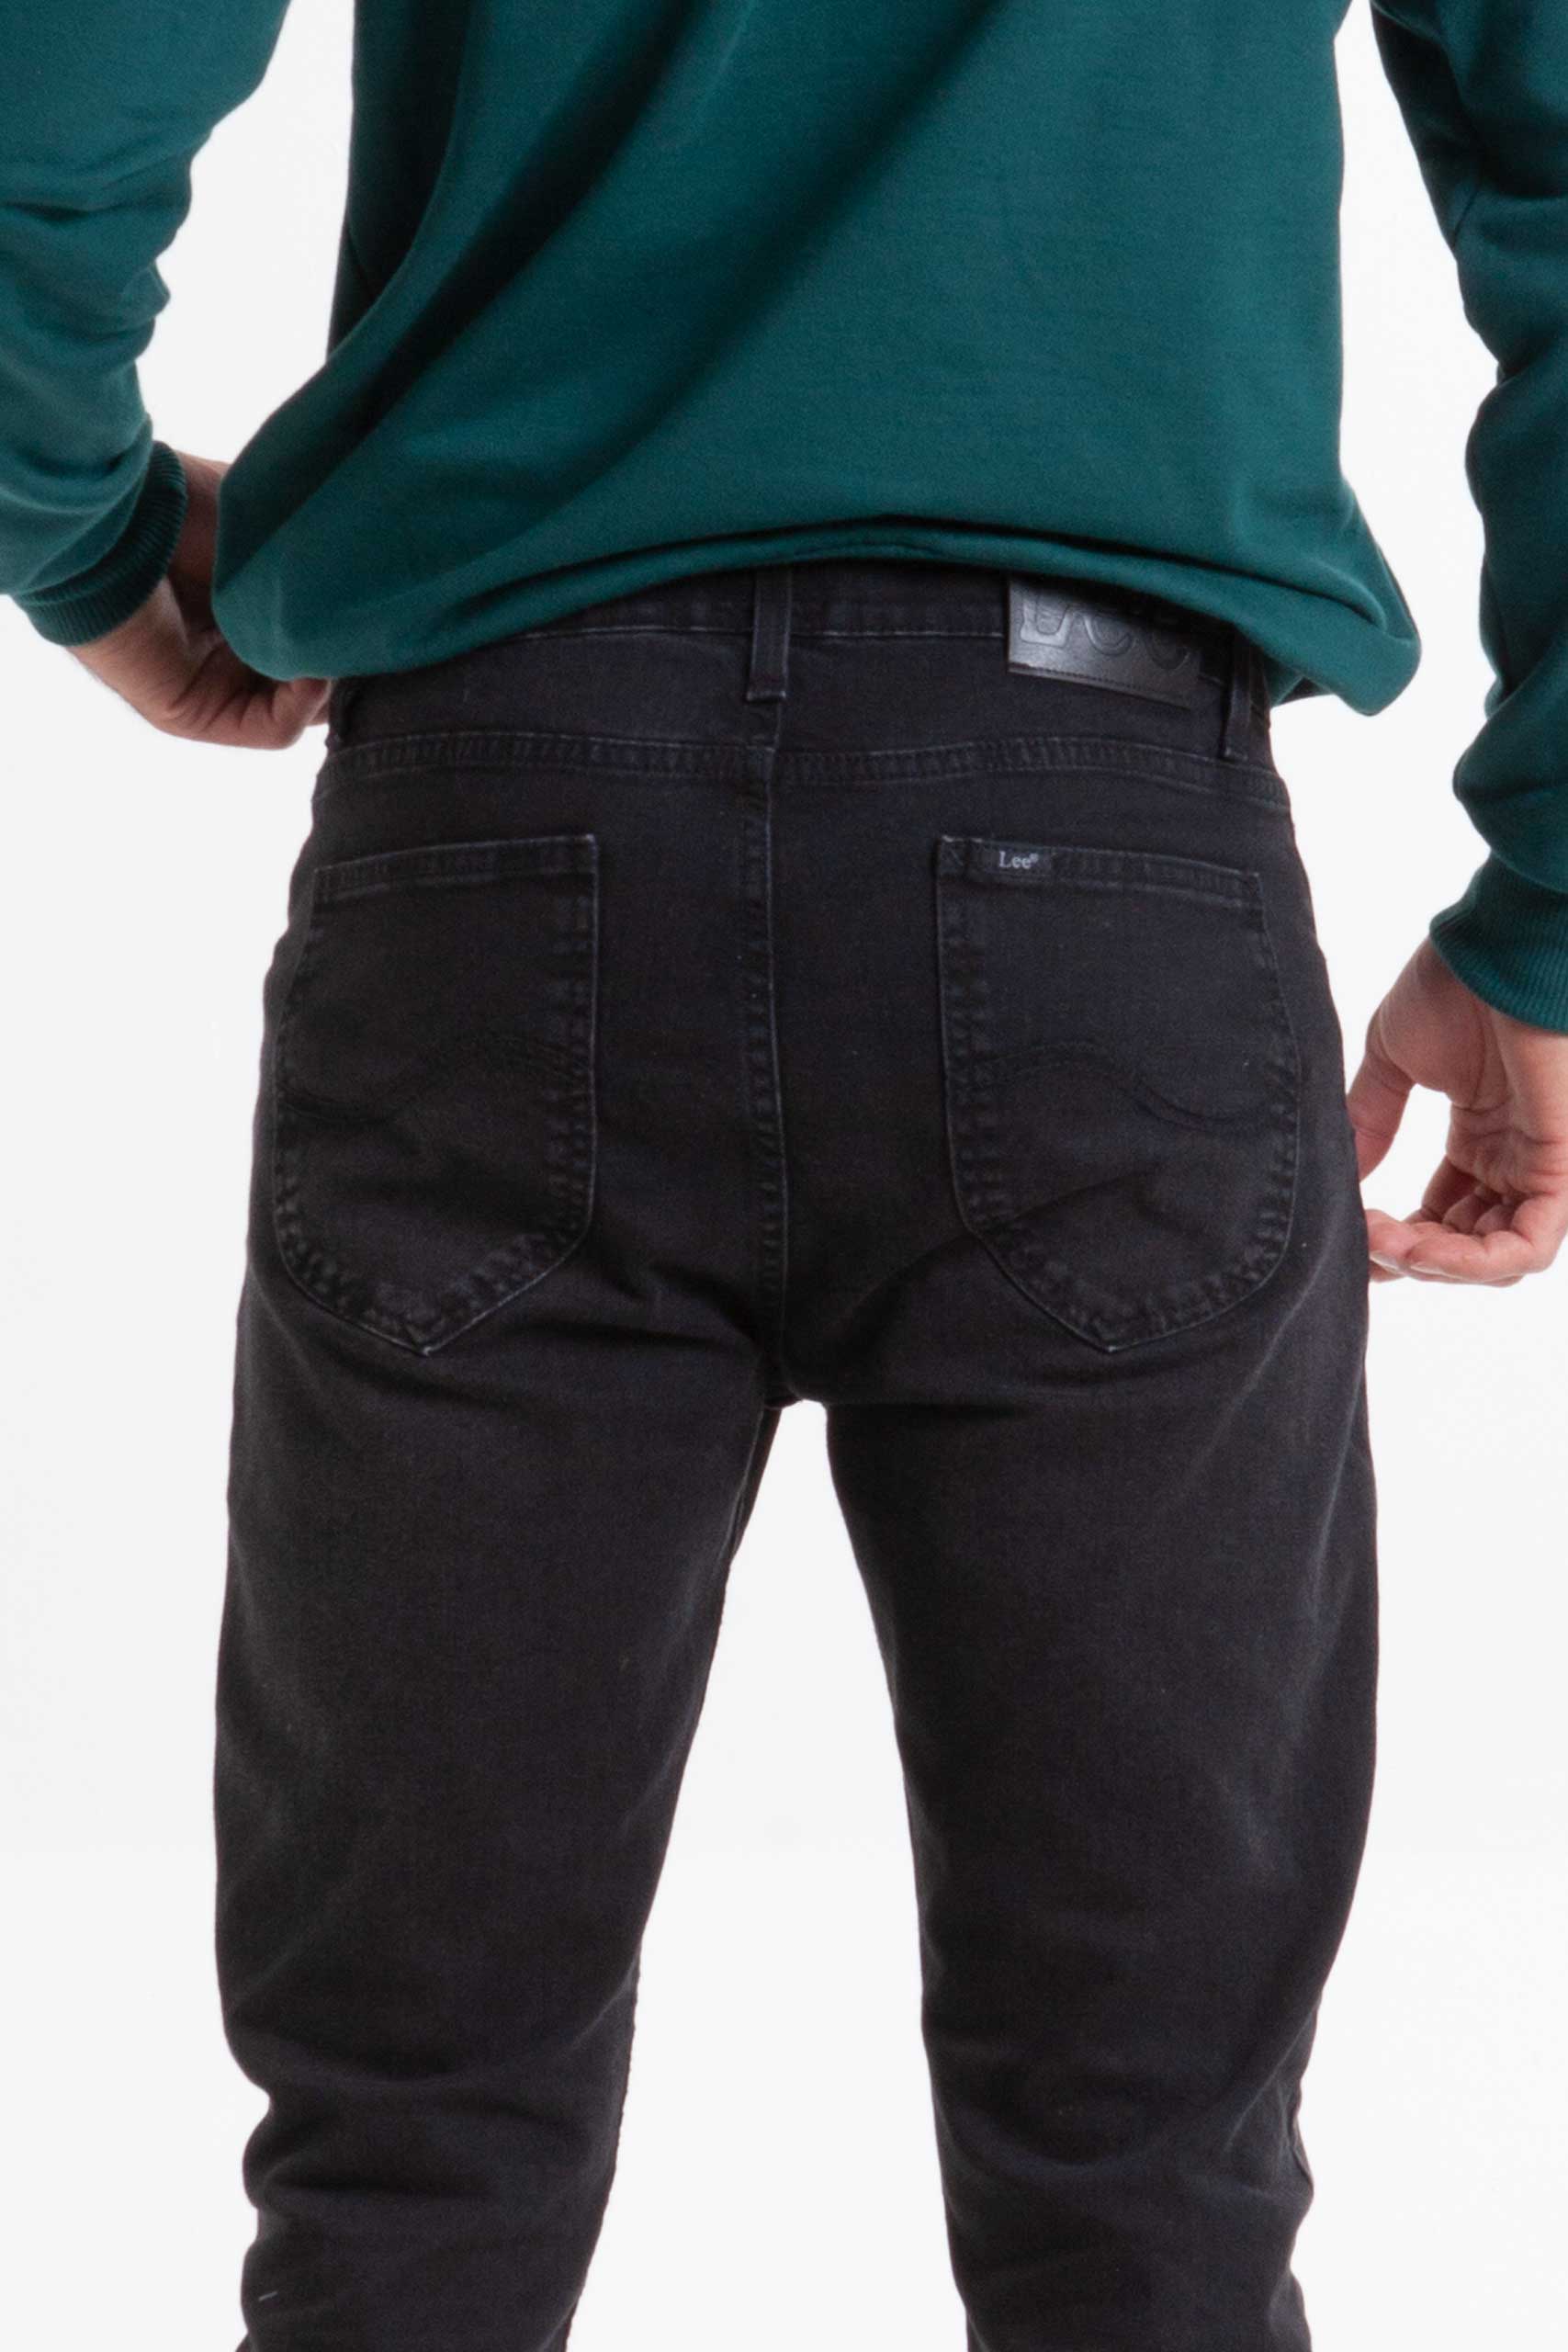 Vista posterior Jean de color verde de marca lee